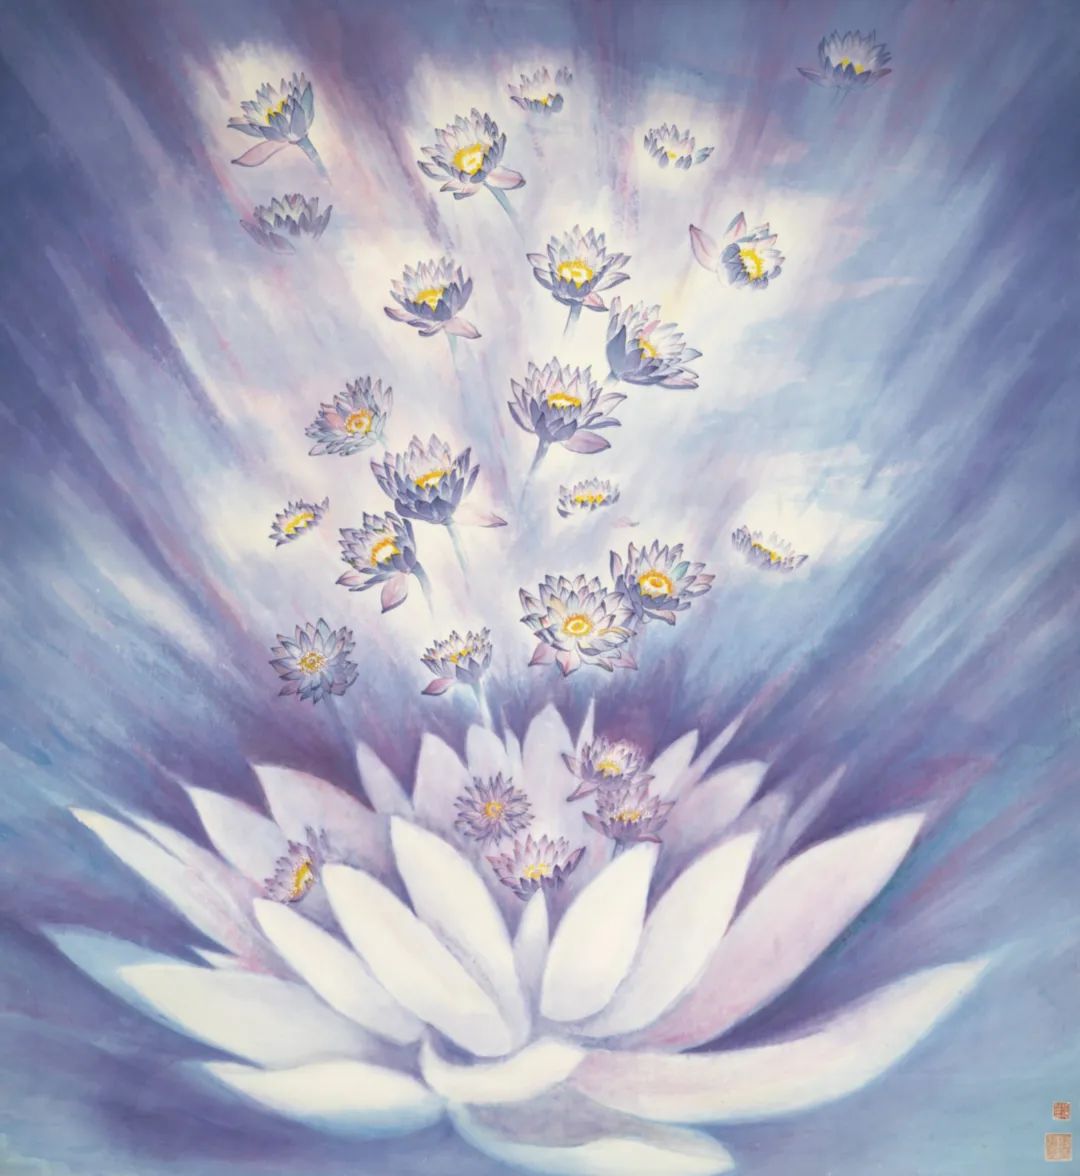 色彩斑斓的意象时空，“花开圣境——张德娜绘画艺术展”将于4月19日在济南开展